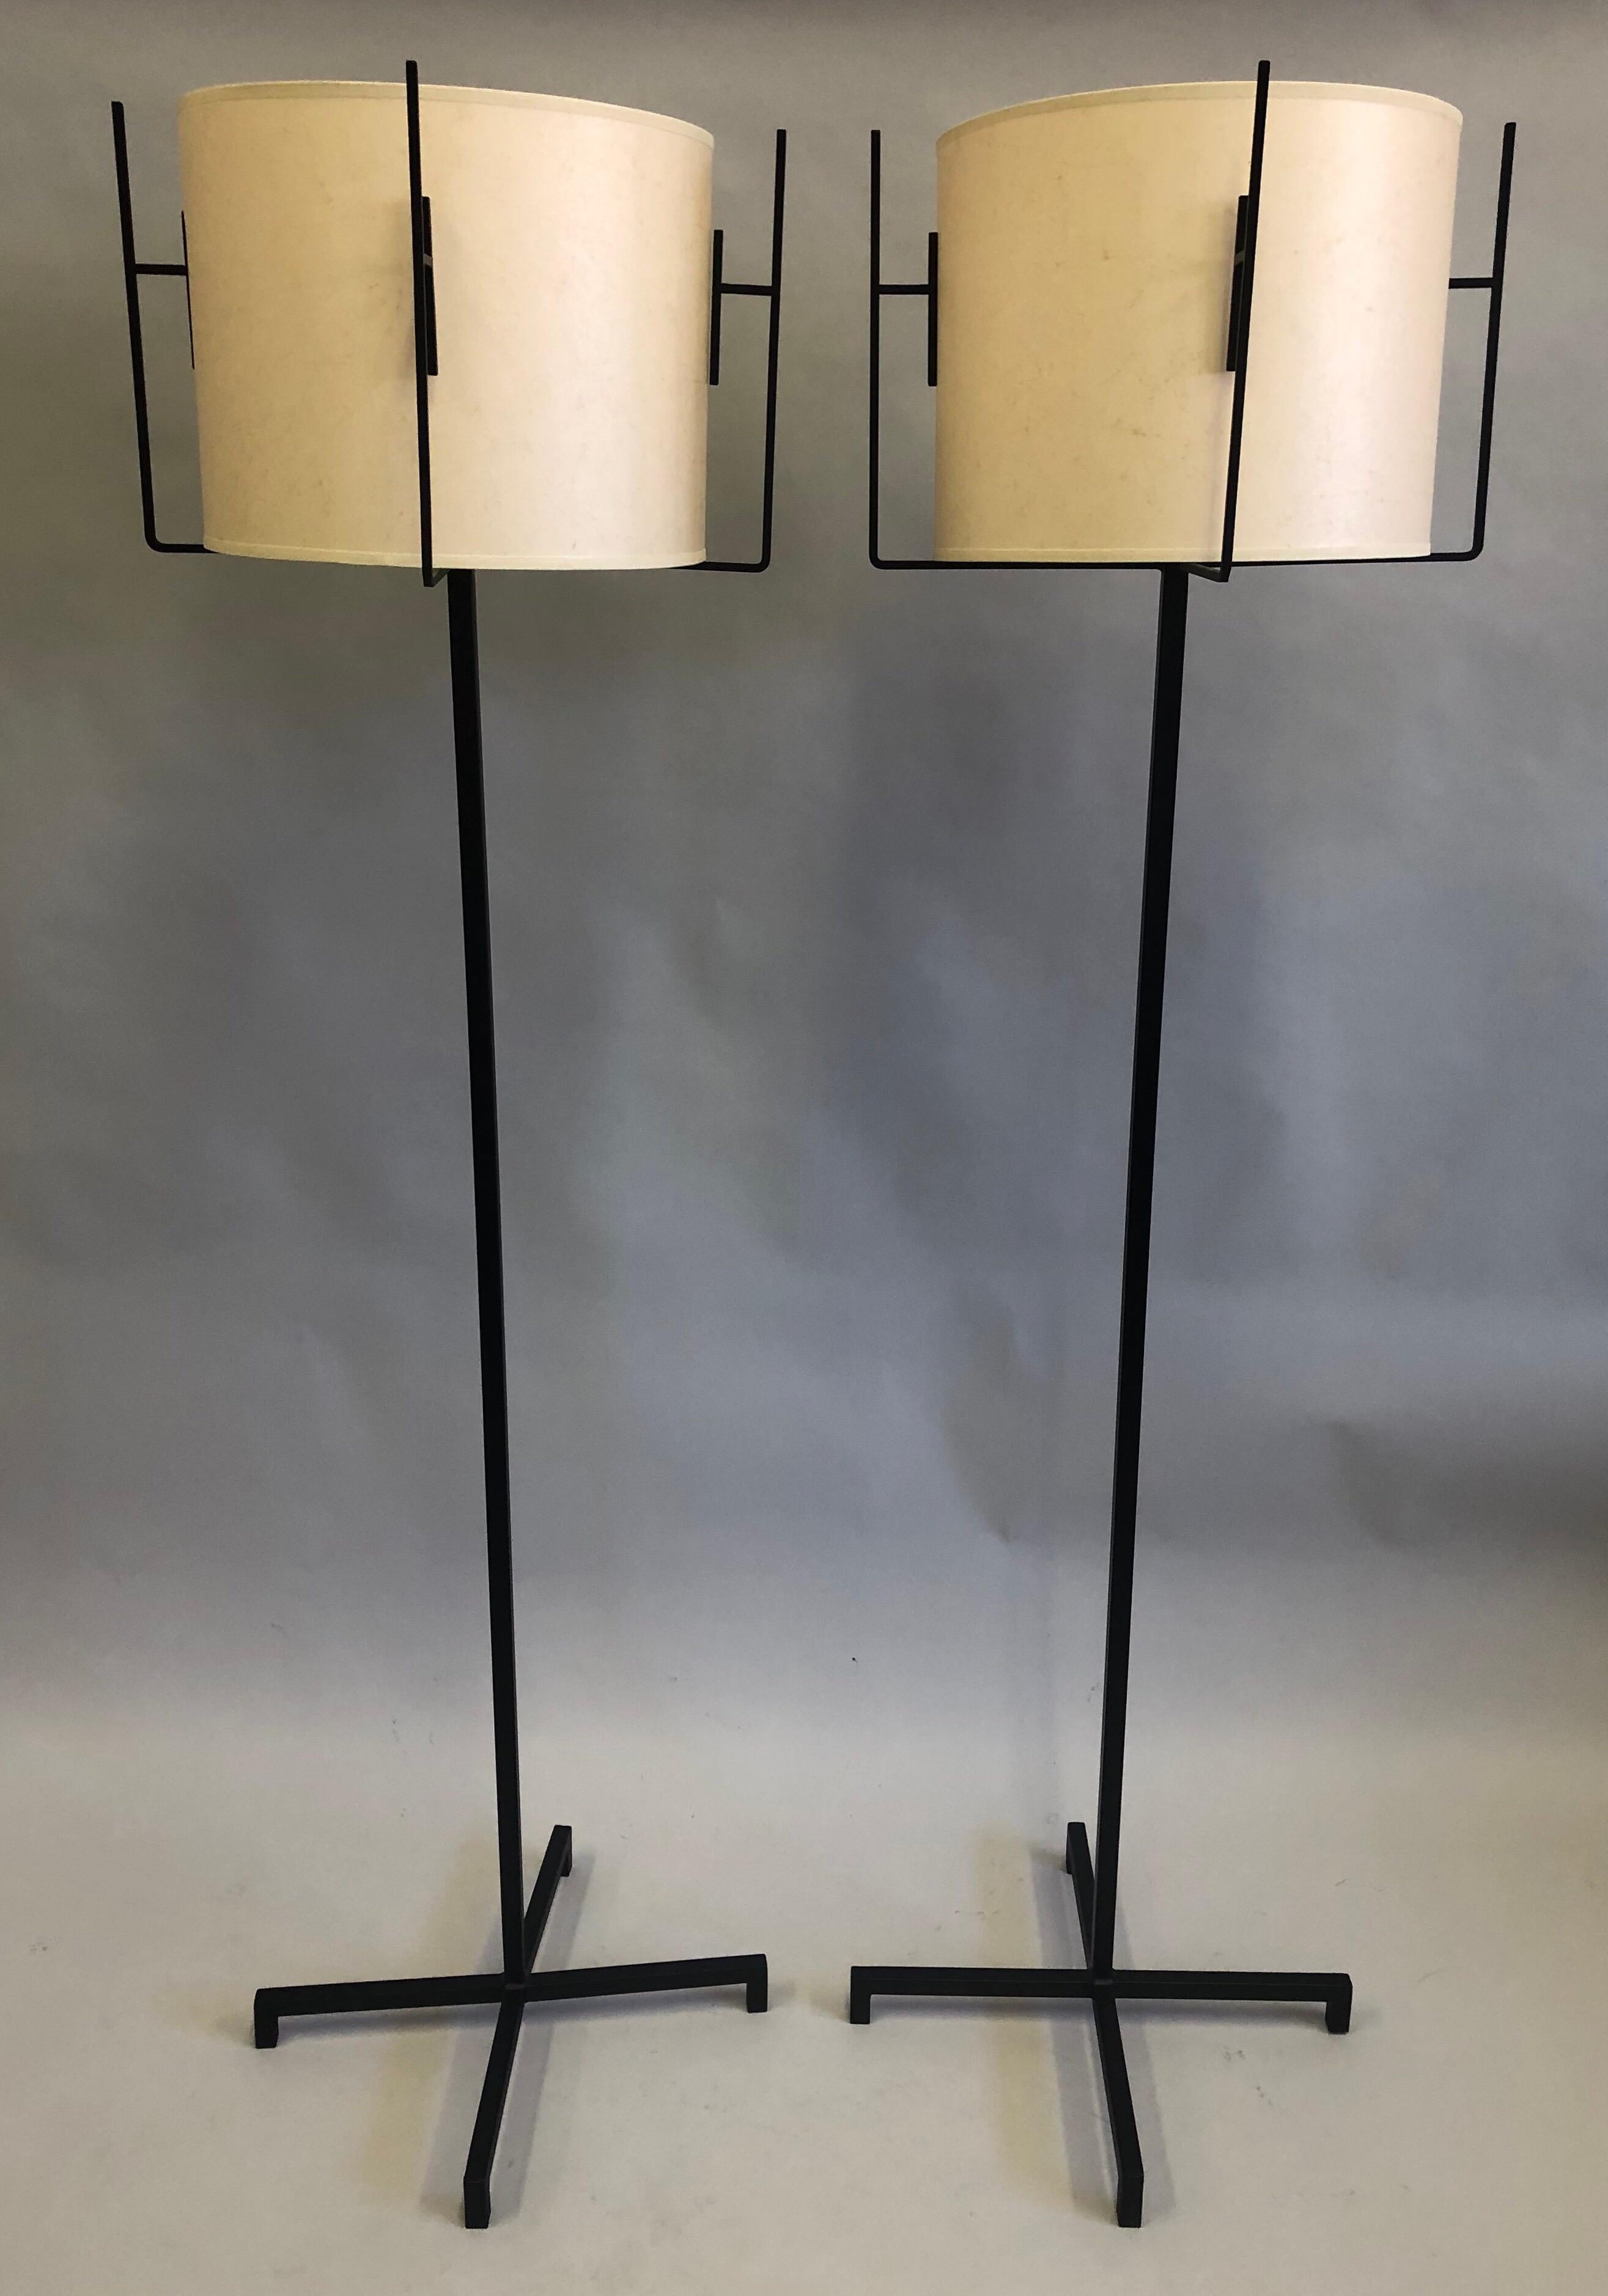 Zwei französische Stehlampen aus Schmiedeeisen von Jacques Adnet aus der Jahrhundertmitte mit Pergamentpapierschirmen. 

Die Stehlampen sind als komplementäres Paar zusammengestellt, wobei jeder Eisensockel in einem X/Kreuz-Muster gestaltet ist. Die